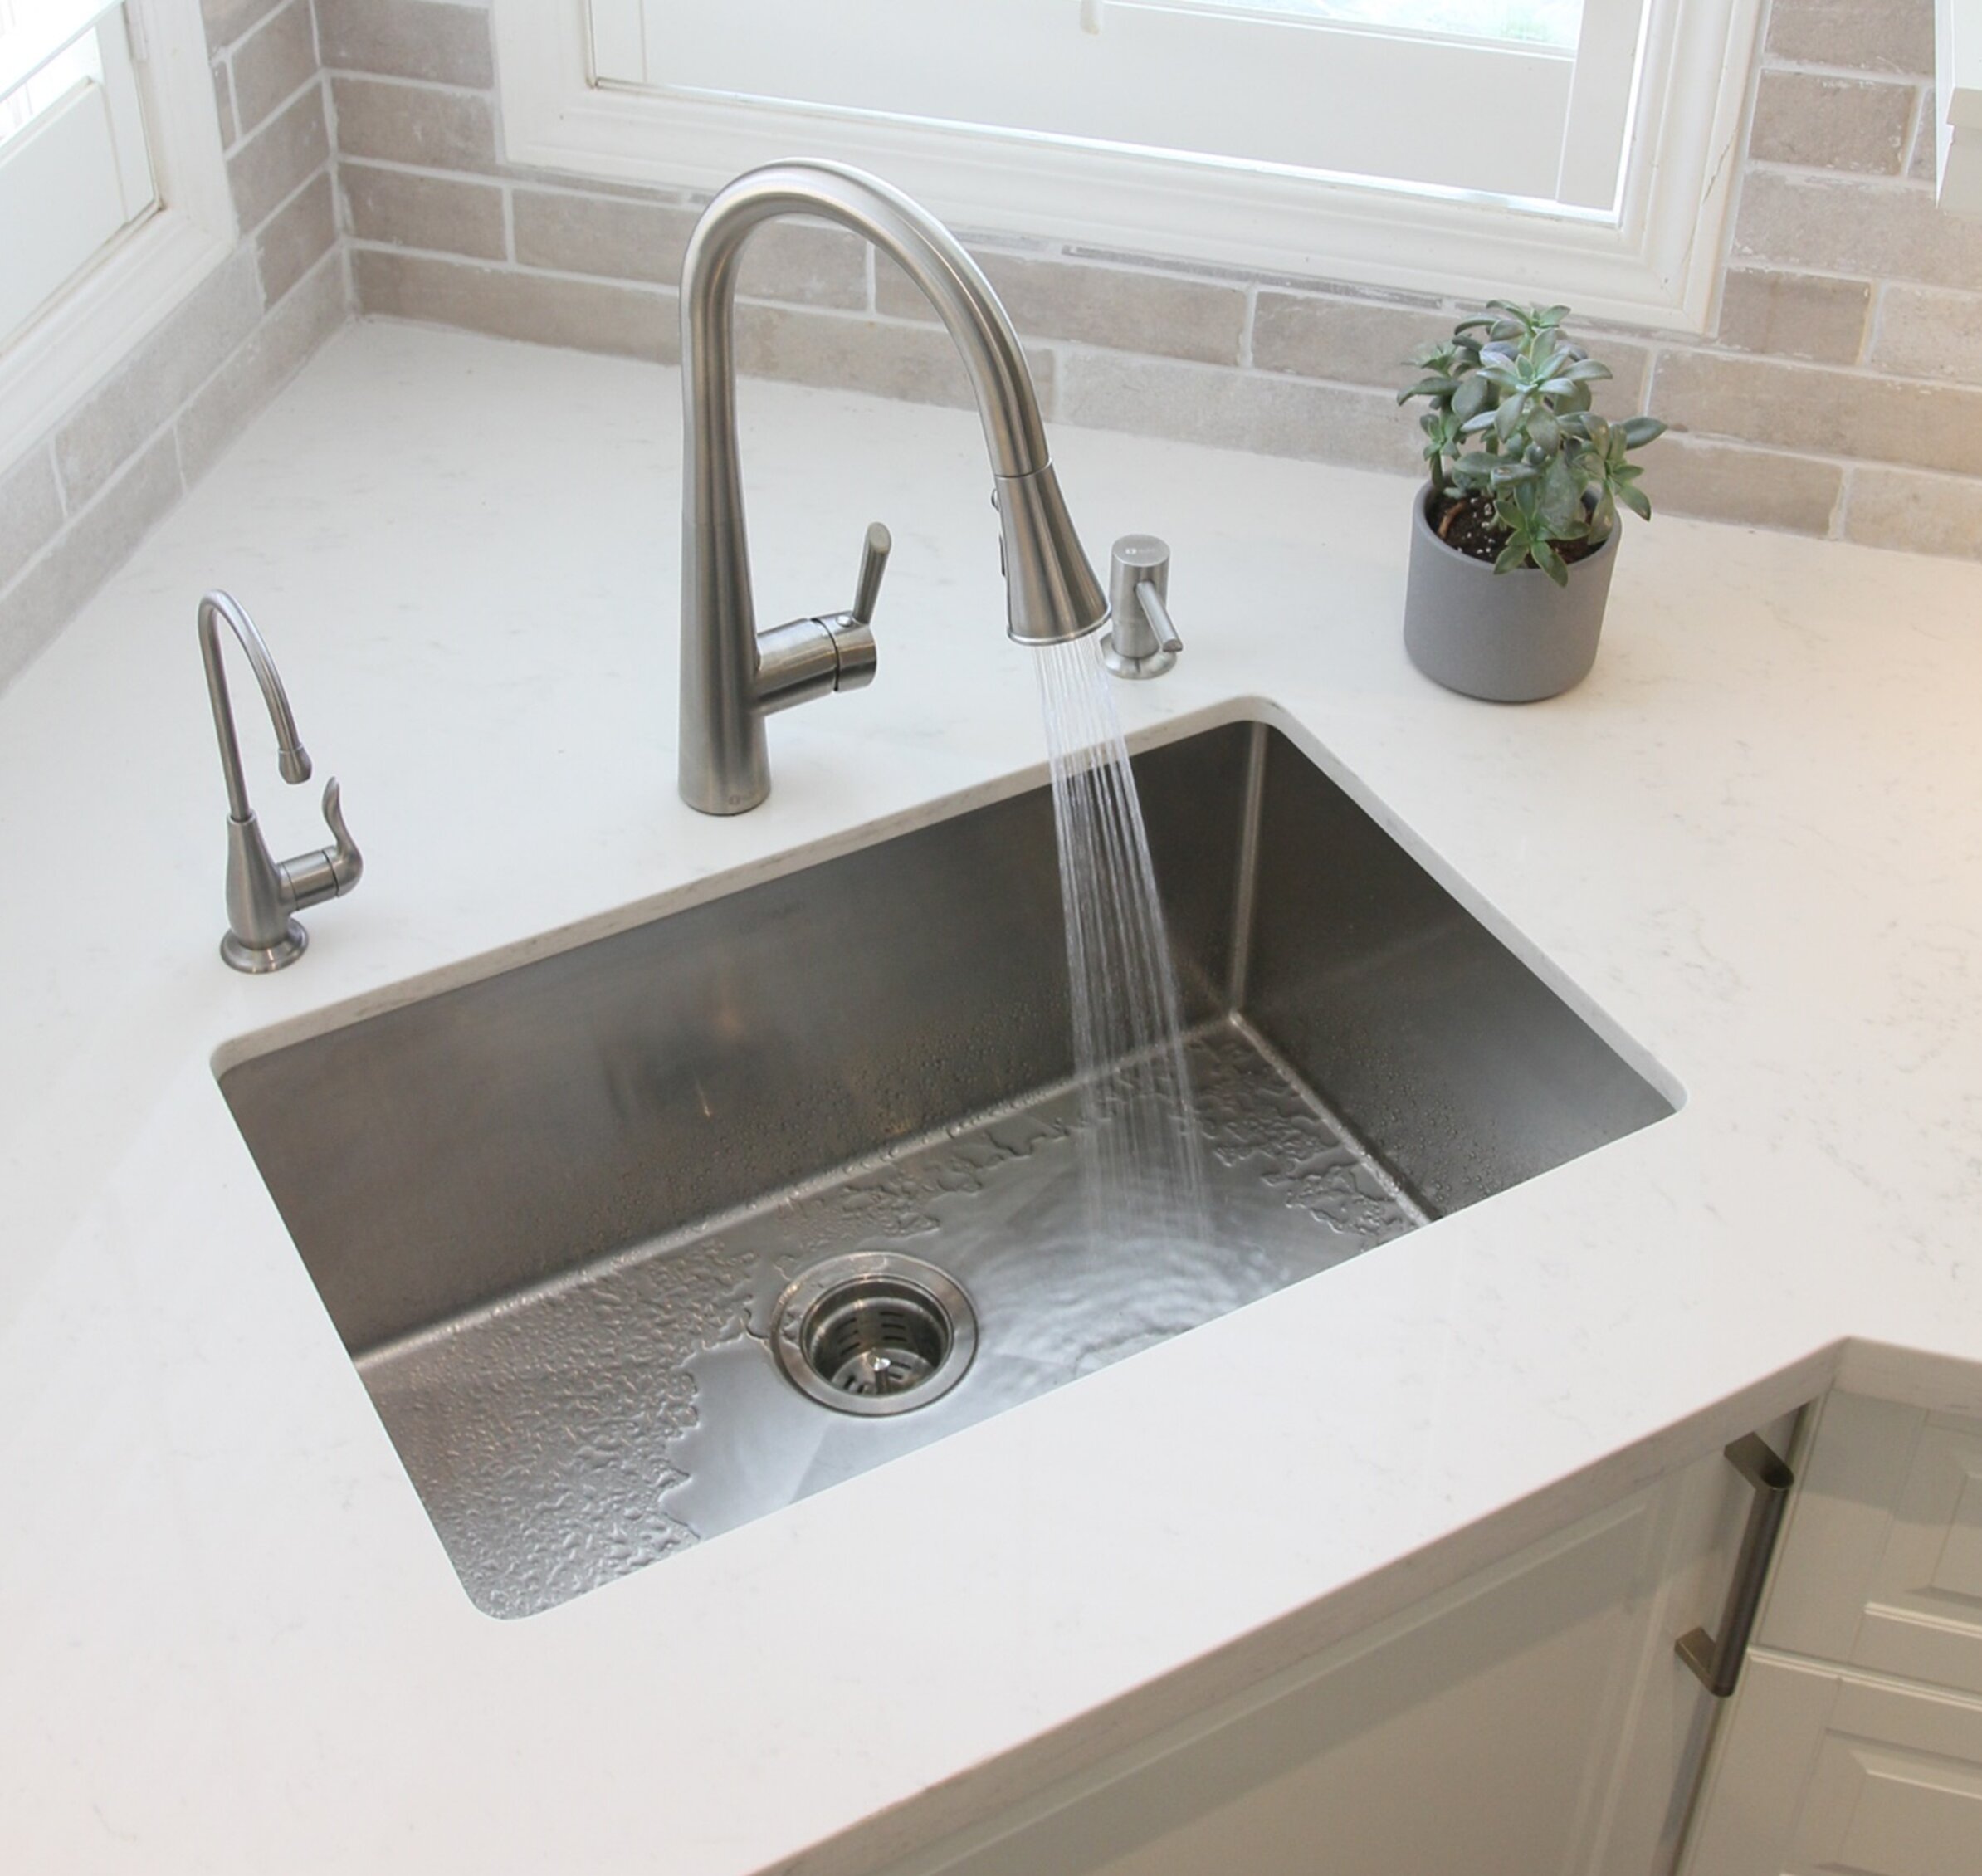 28 L X 18 W Undermount Kitchen Sink With Basket Strainer